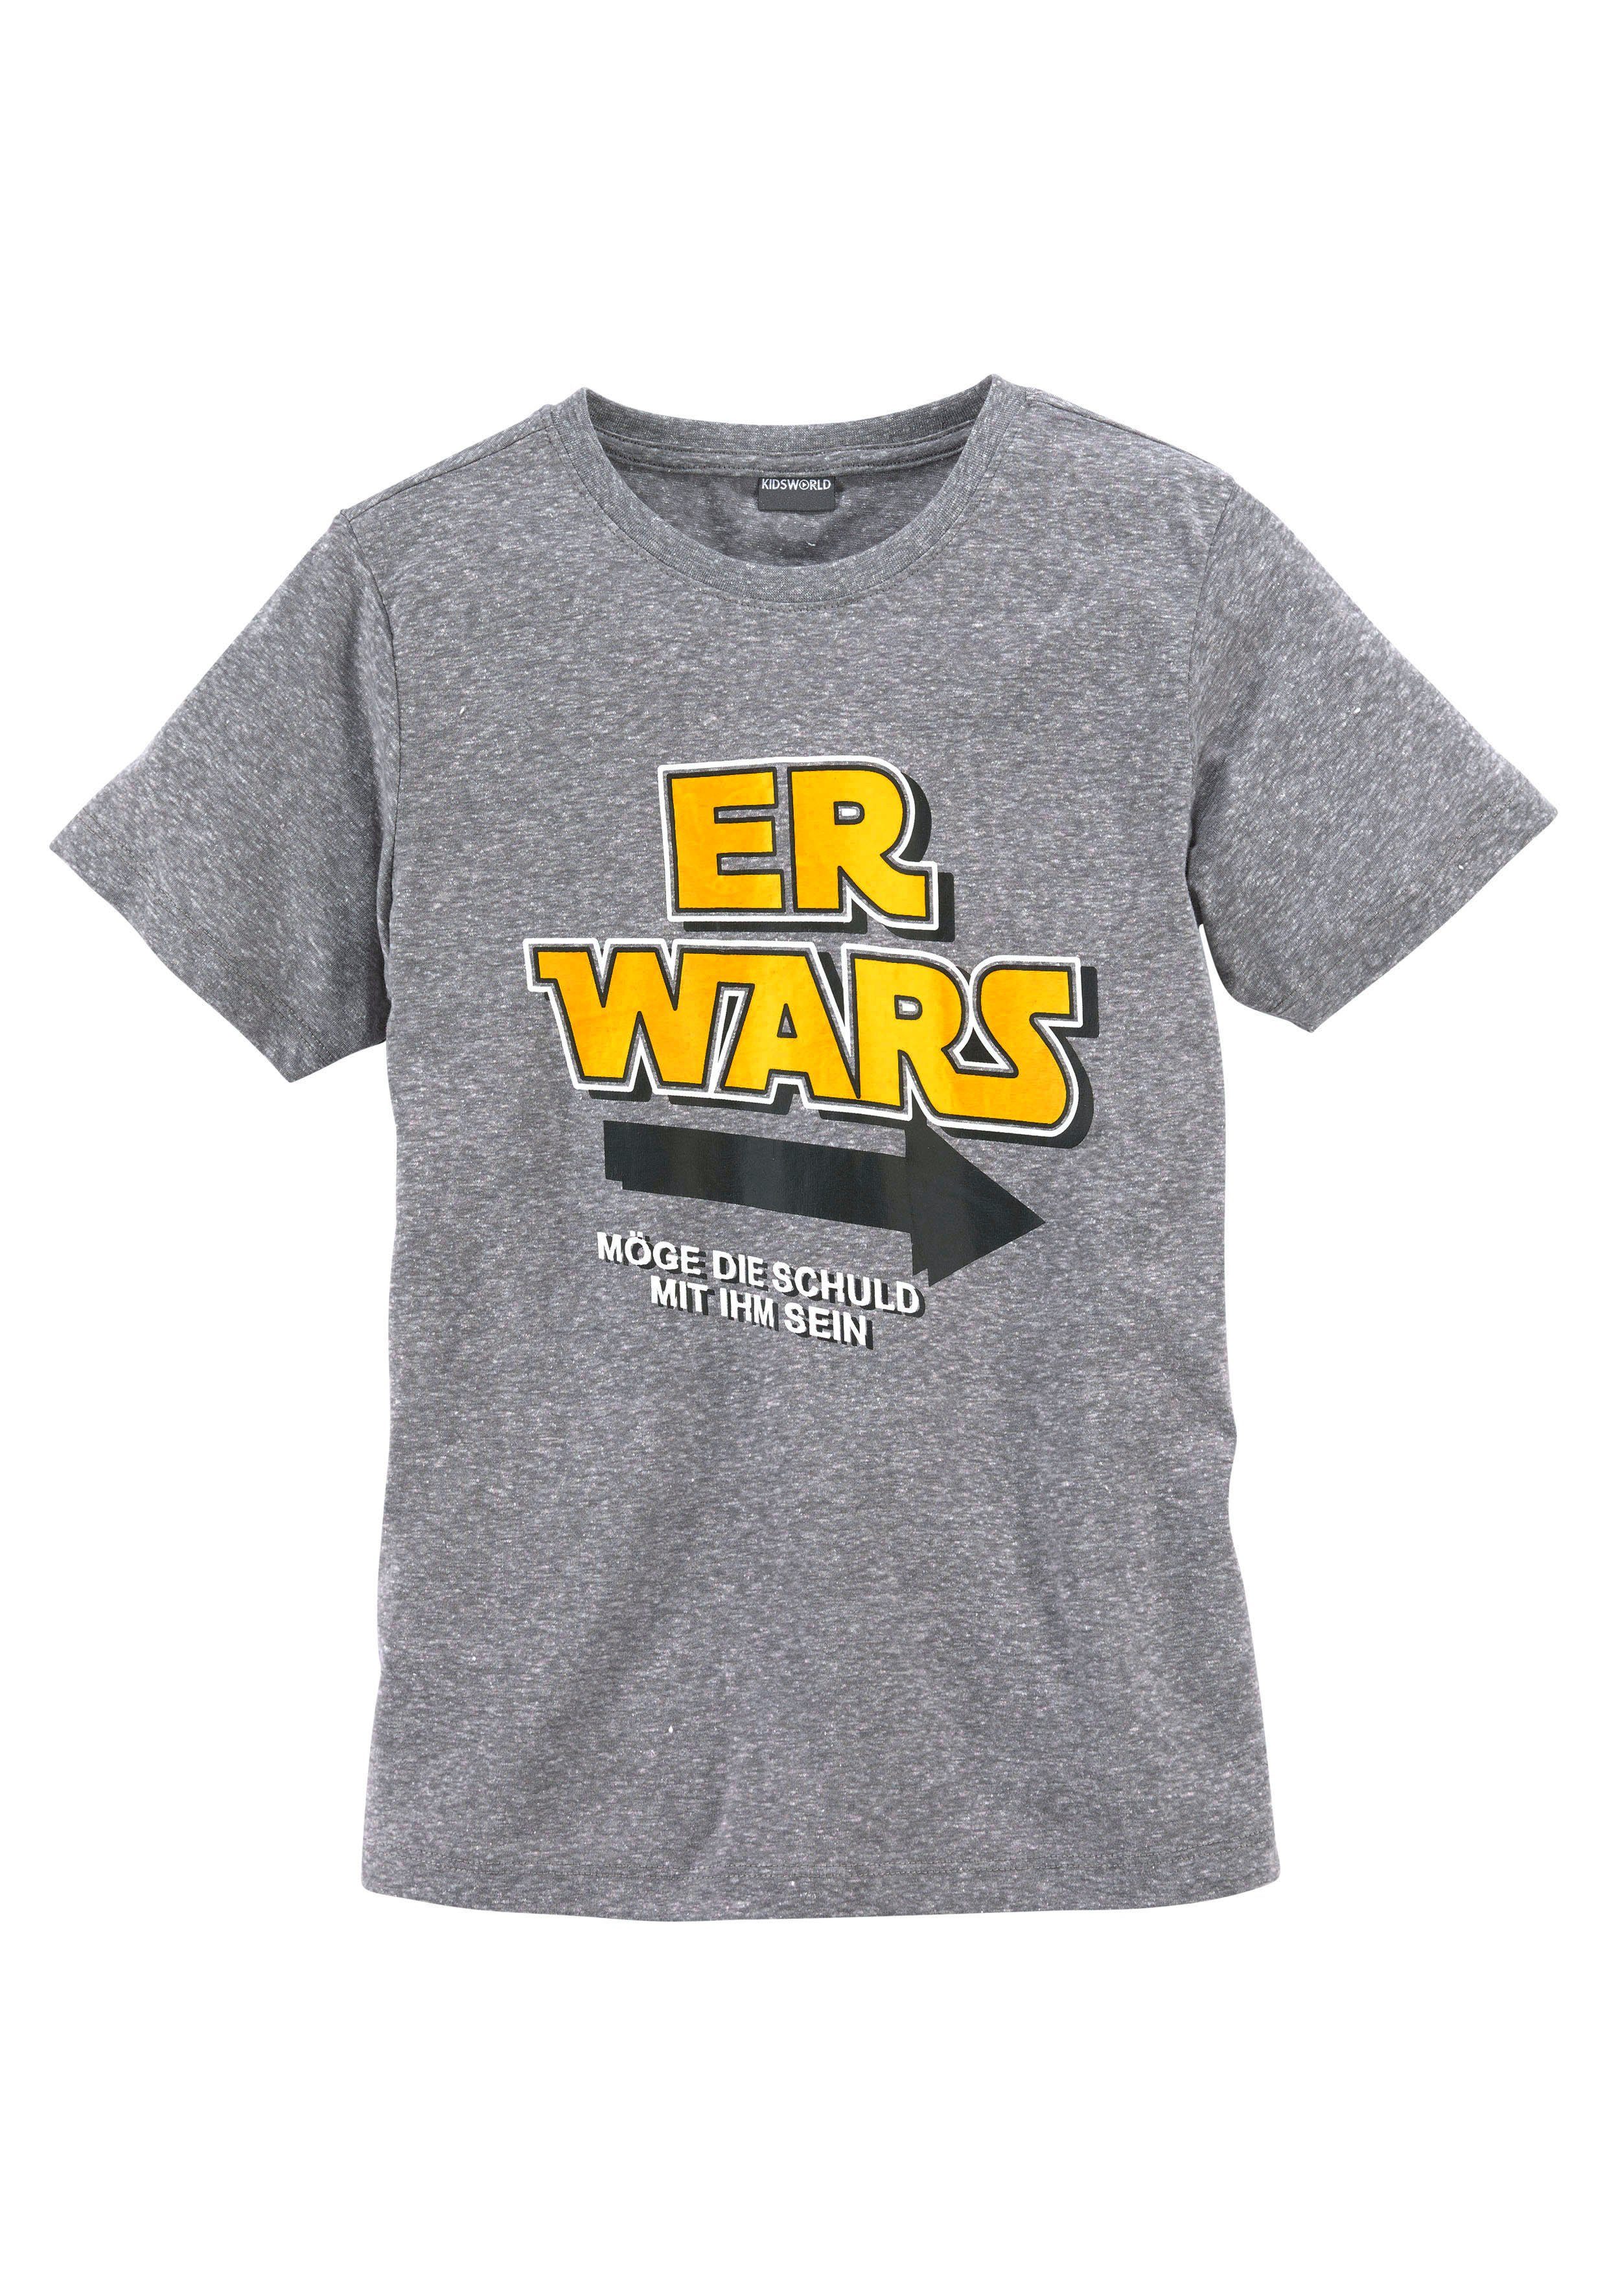 KIDSWORLD T-Shirt Spruch WARS, ER